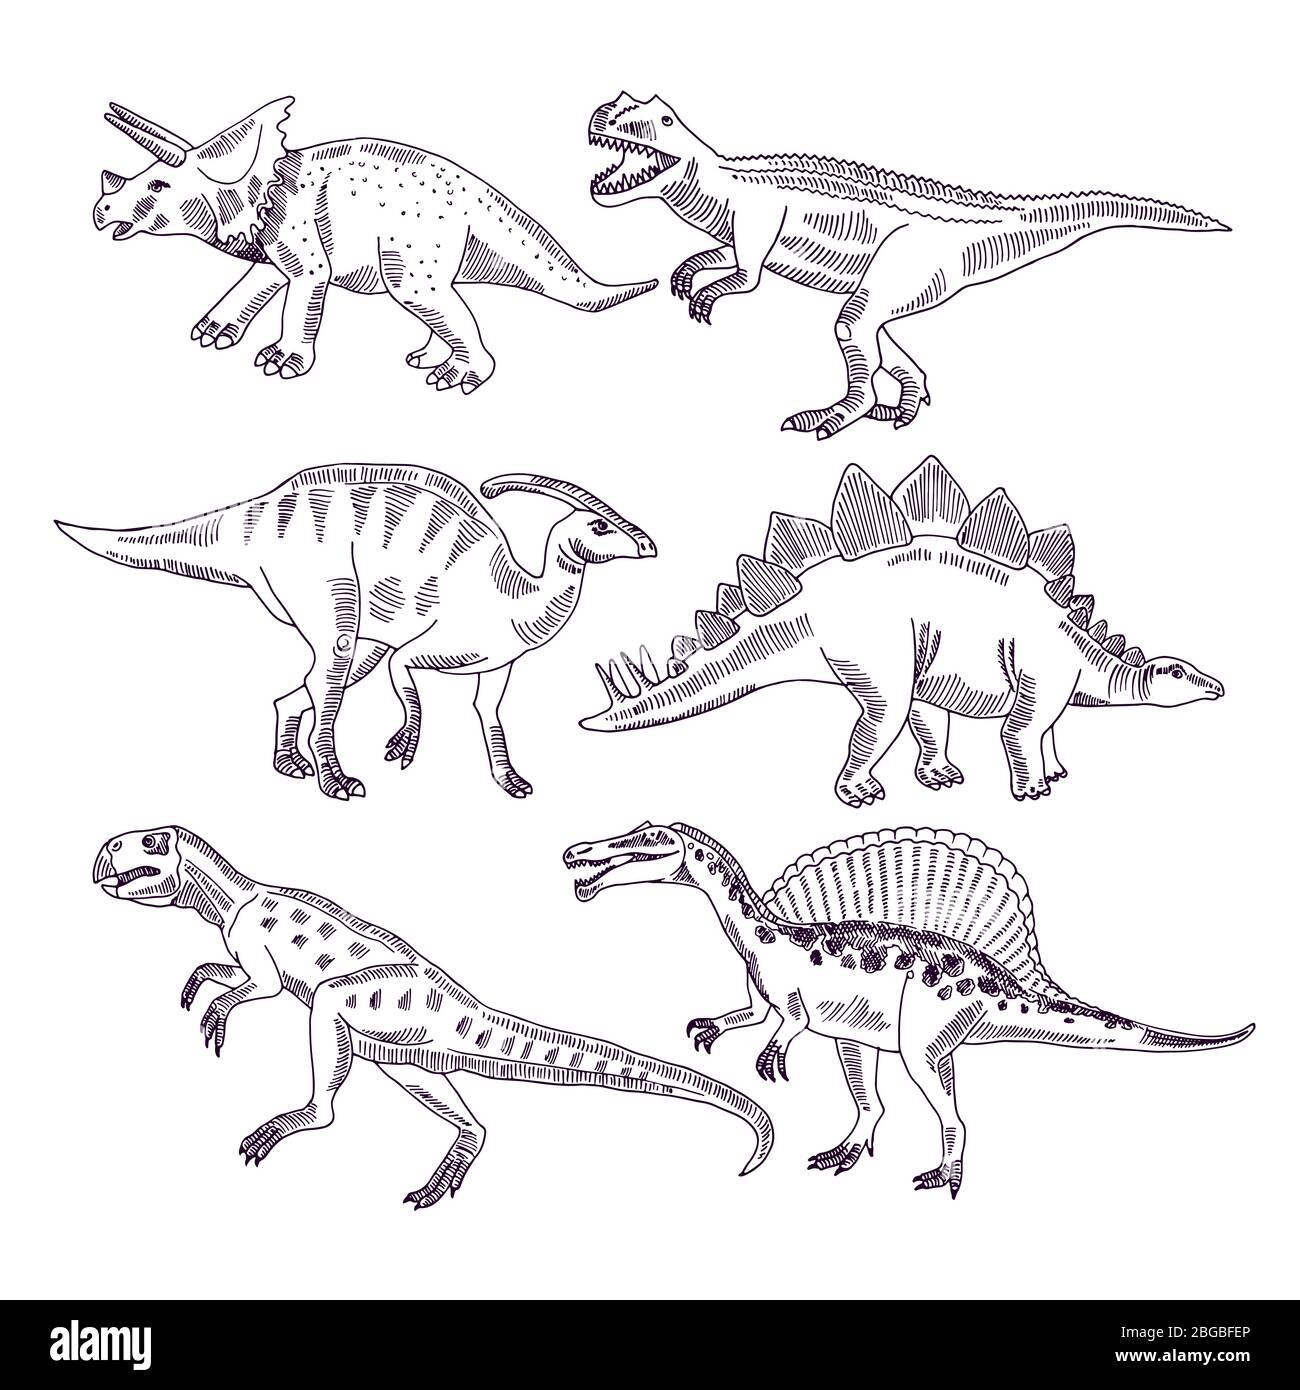 Vita selvaggia con dinosauri. Set di illustrazioni disegnate a mano di t rex e altri tipi di dinosauri Illustrazione Vettoriale